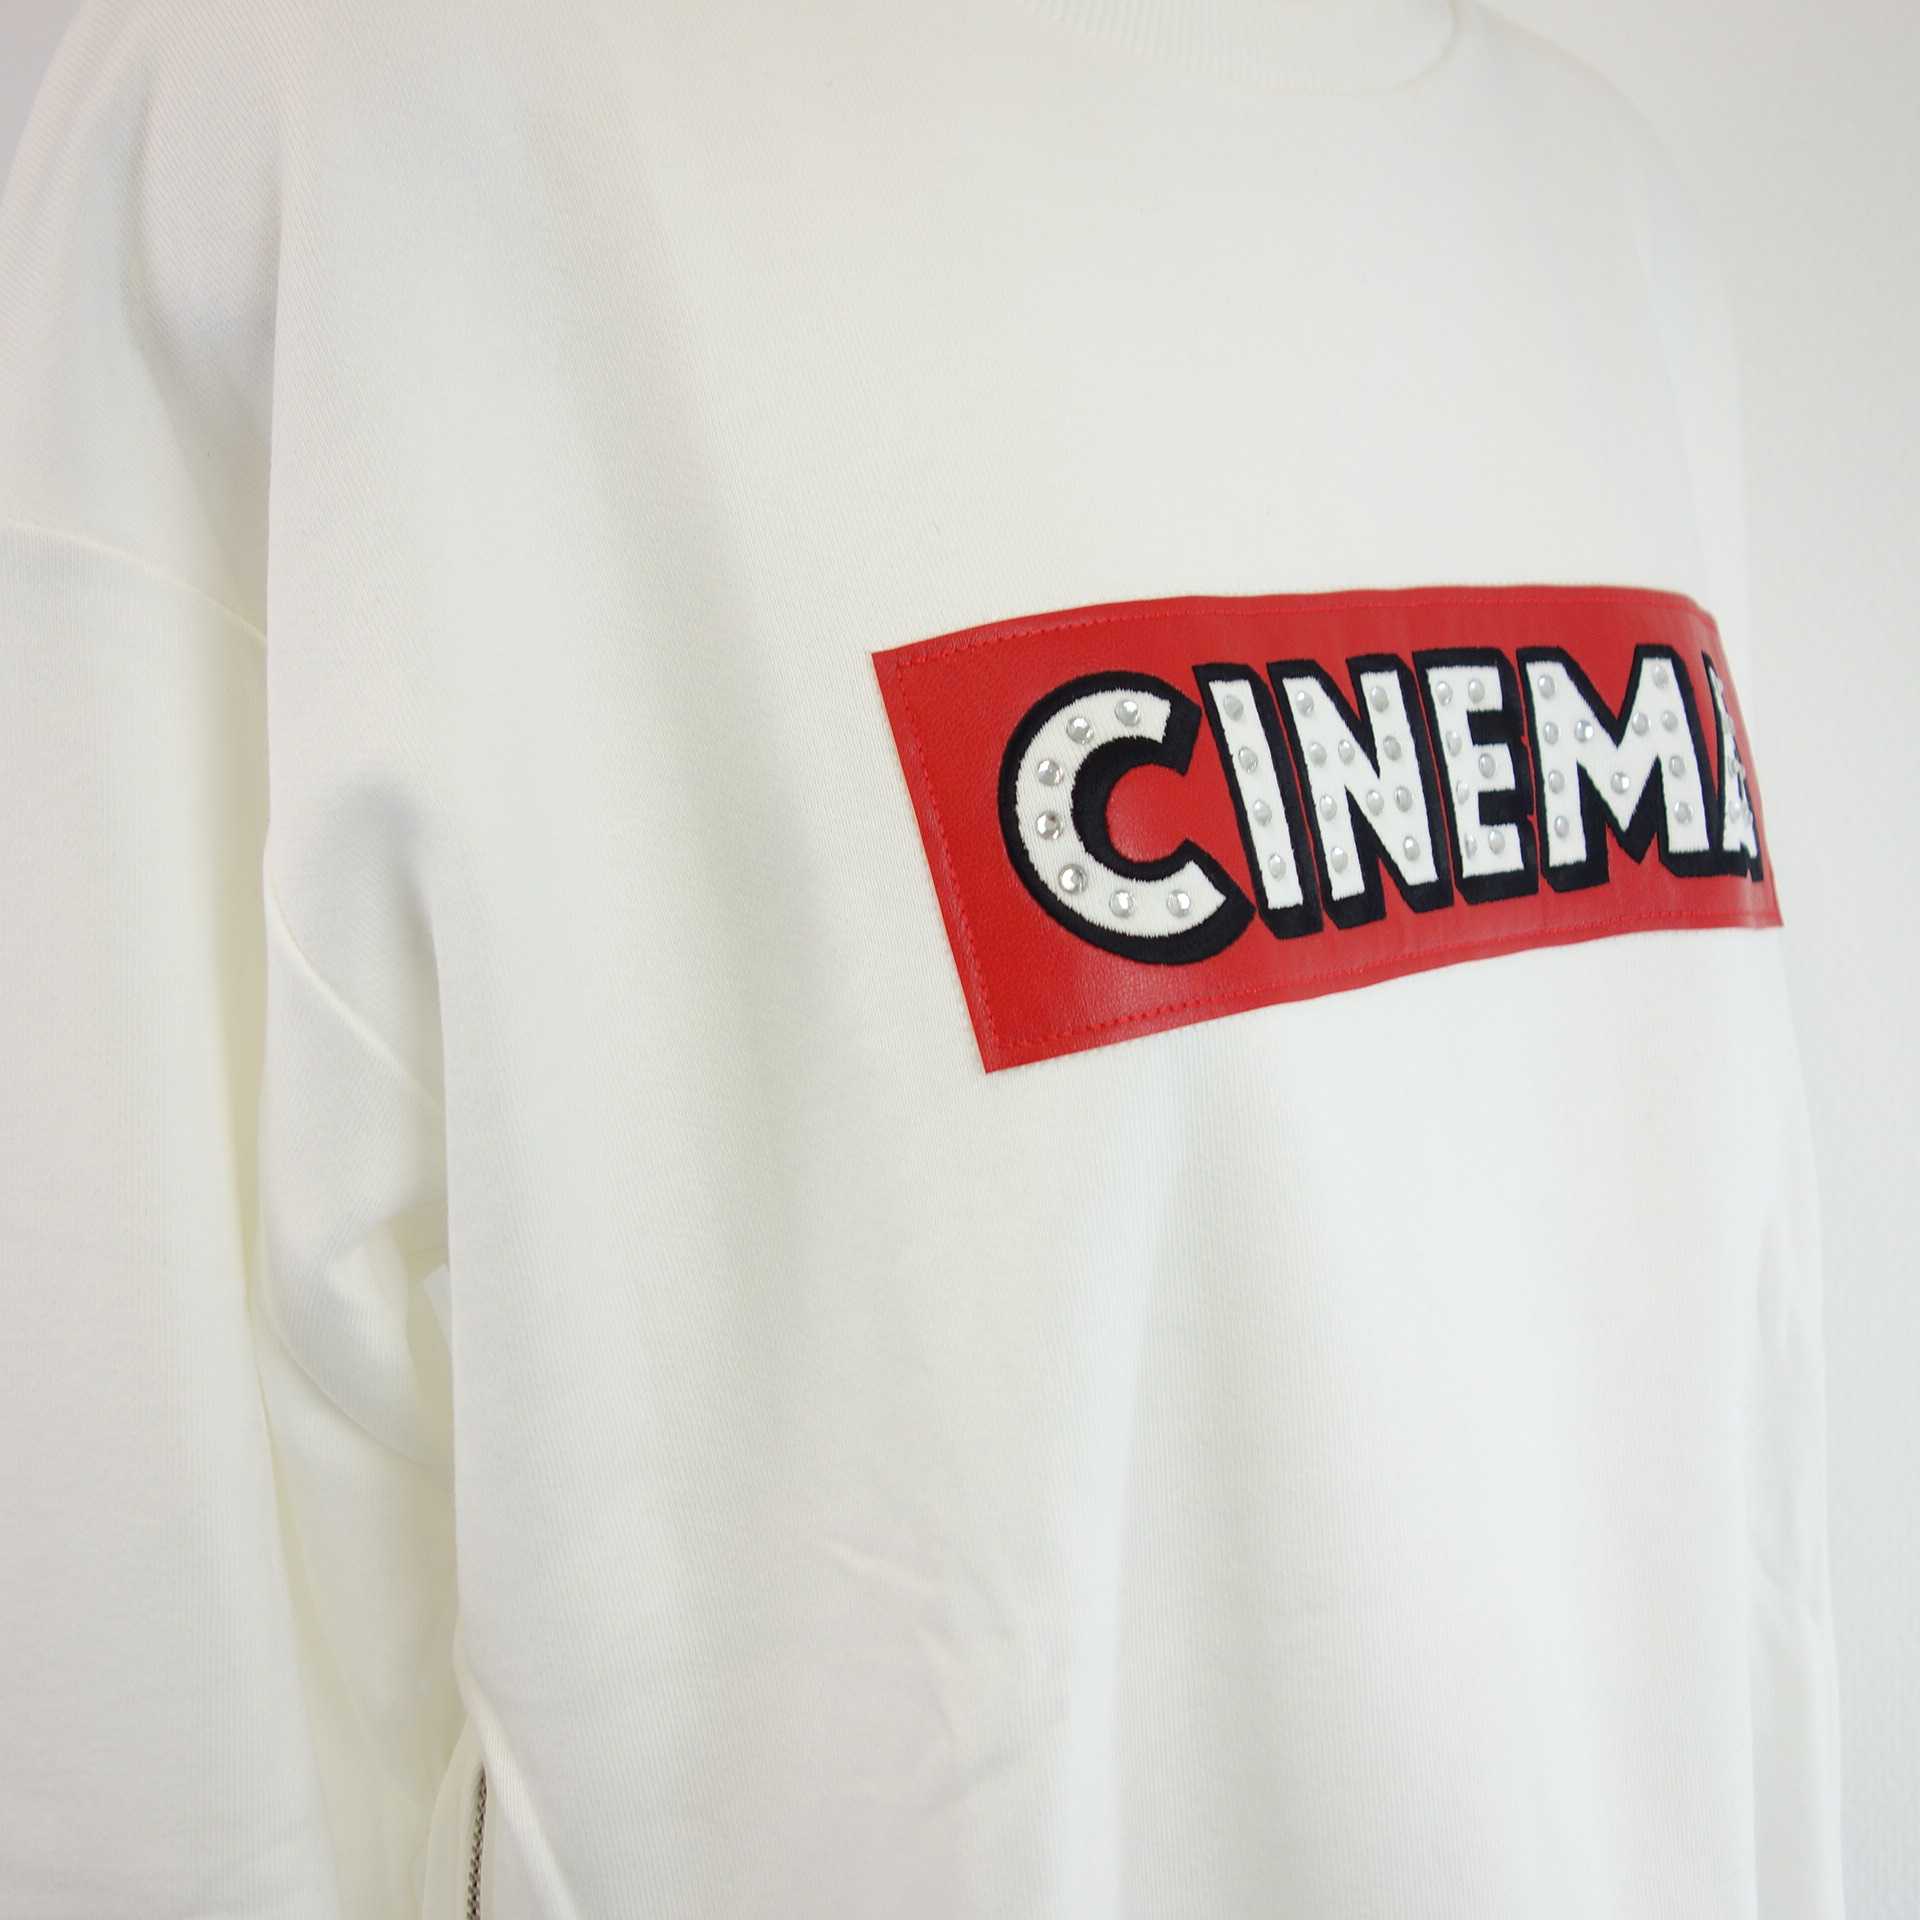 QUANTUM COURAGE Damen Sweatshirt Shirt Pullover Oberteil Weiß Größe M 38 Modell Cinema